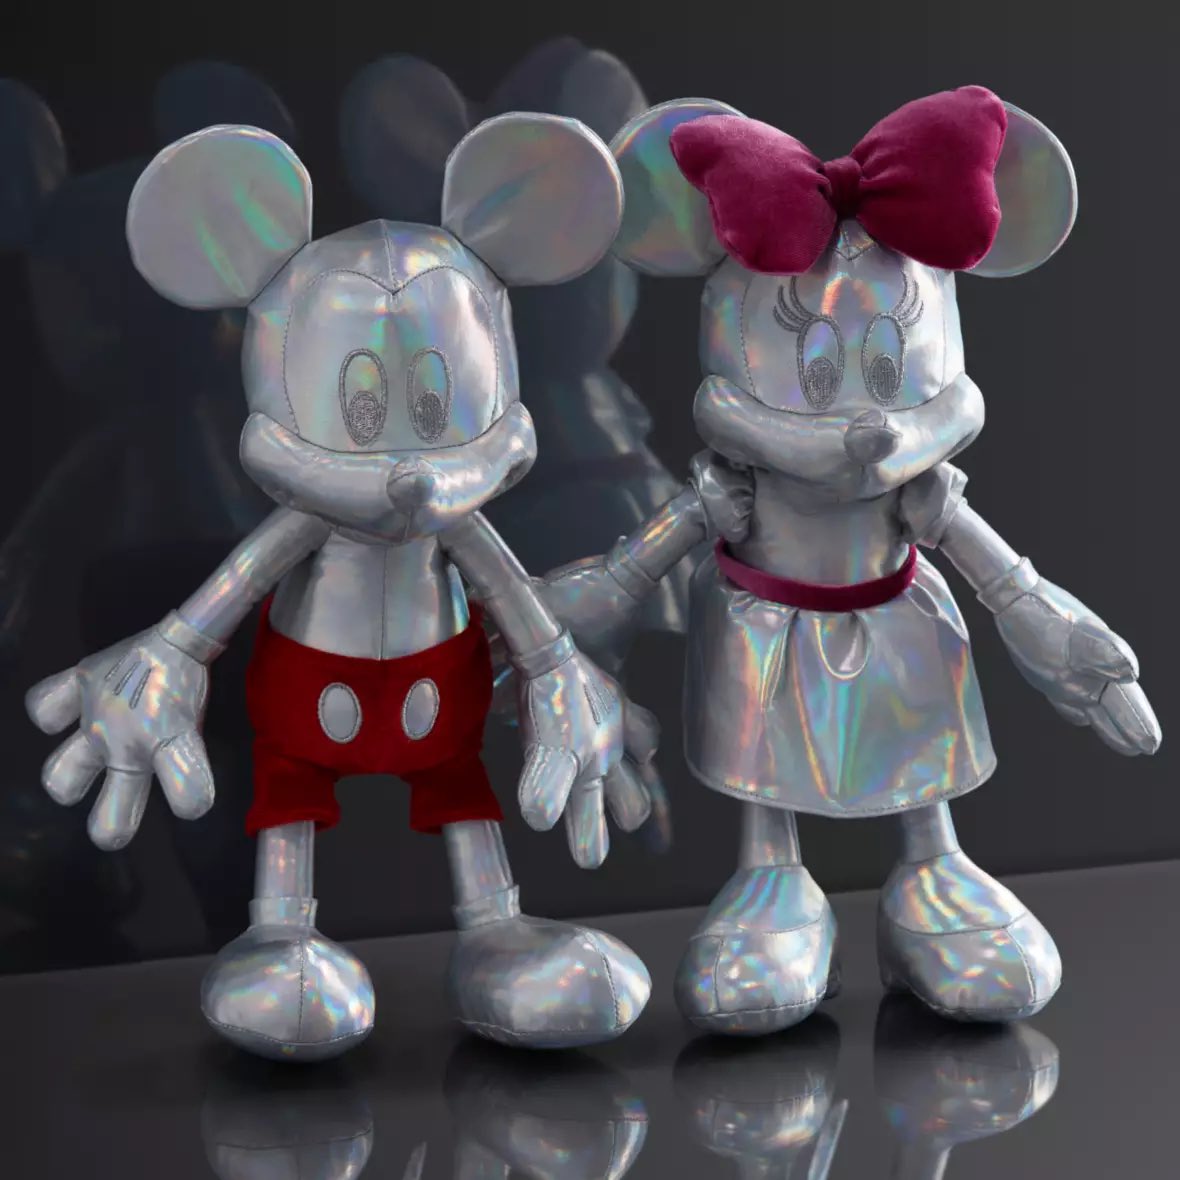 Micky und Minnie Sammel-Plüschfiguren zu Disney100